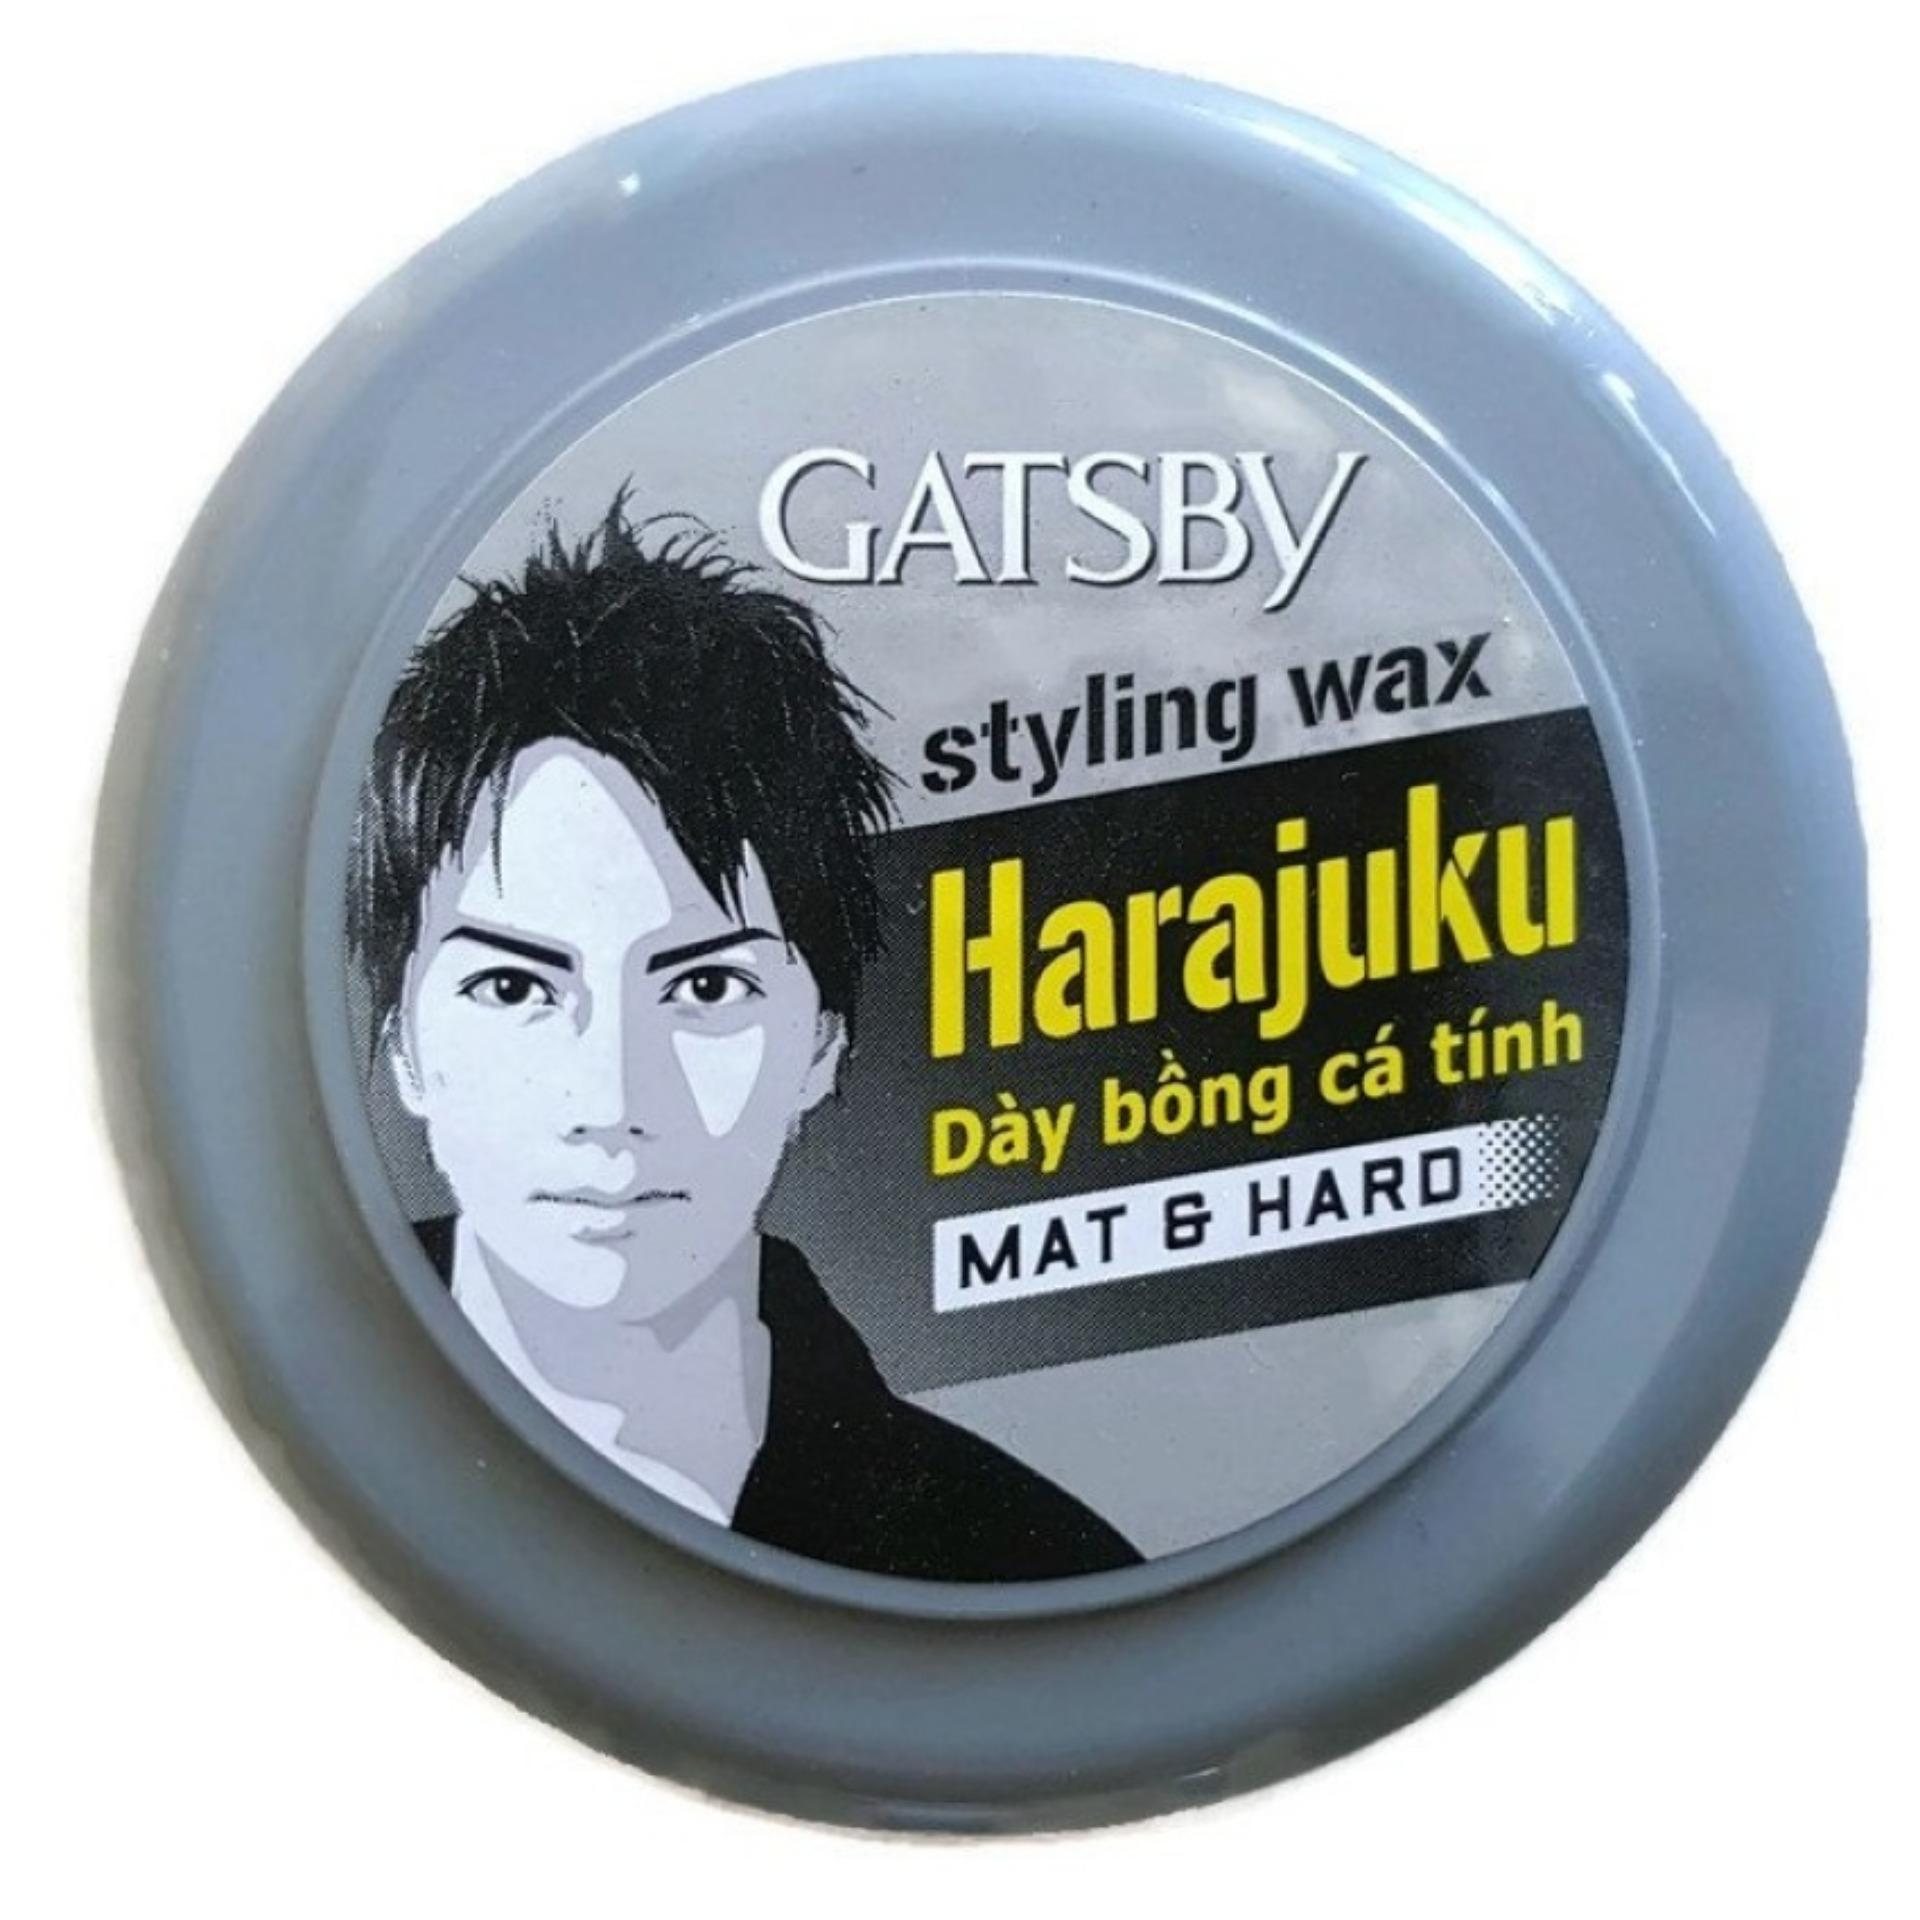 Sáp Wax tạo kiểu tóc Gatsby Harajuku Styling Mat & Hard Đen Xám 75g